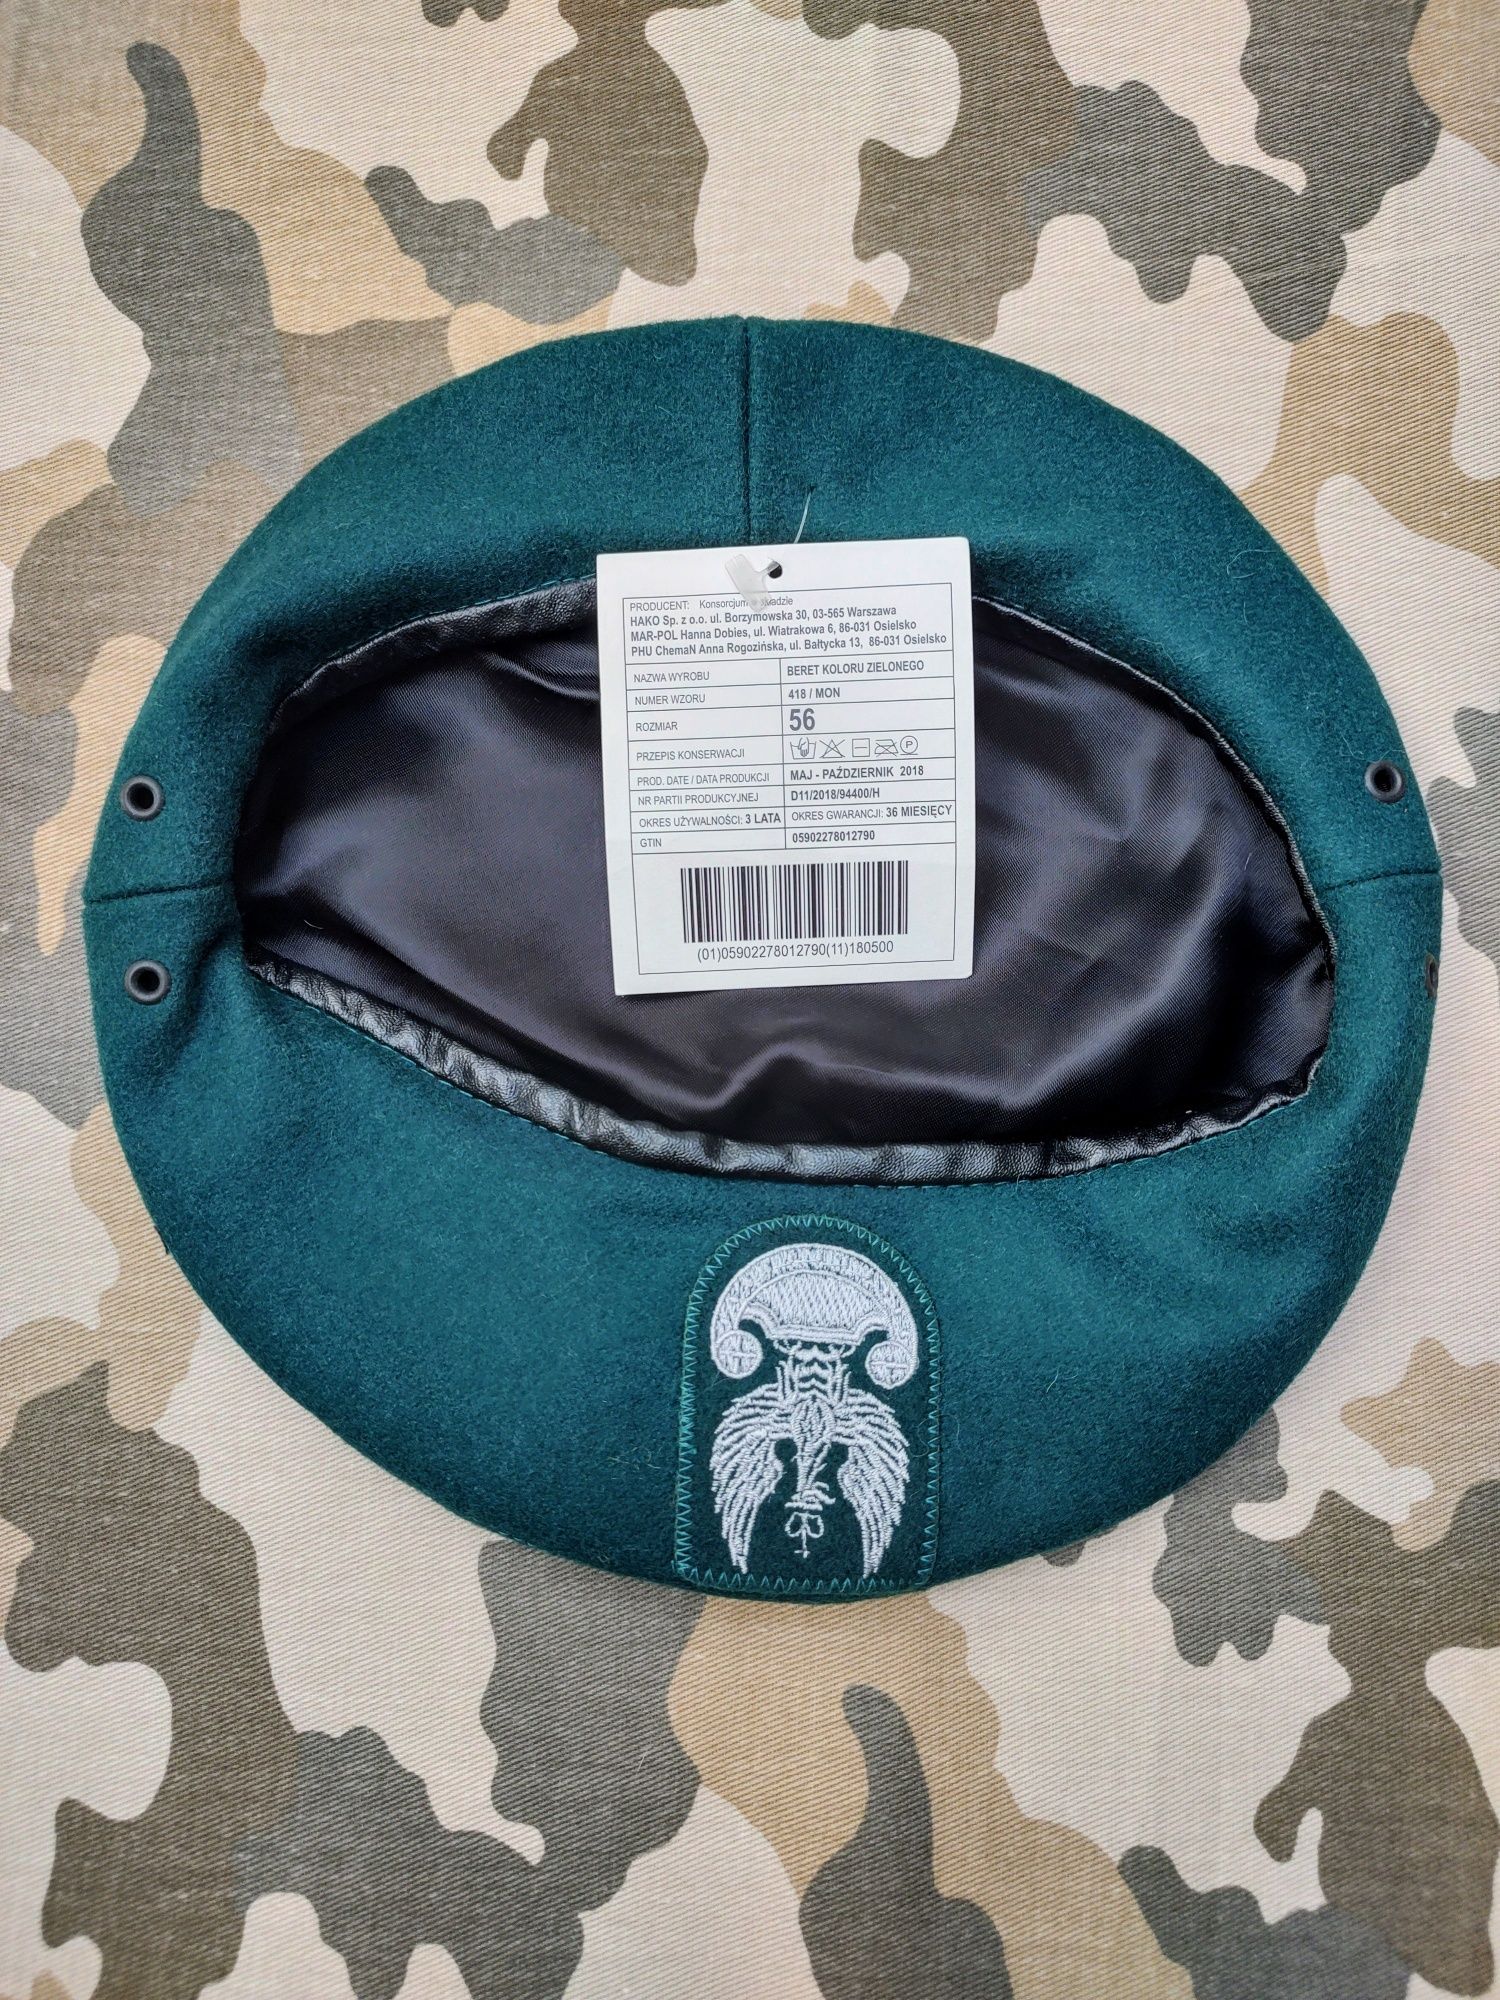 Nowy beret wojskowy zielony, rozmiar 56.